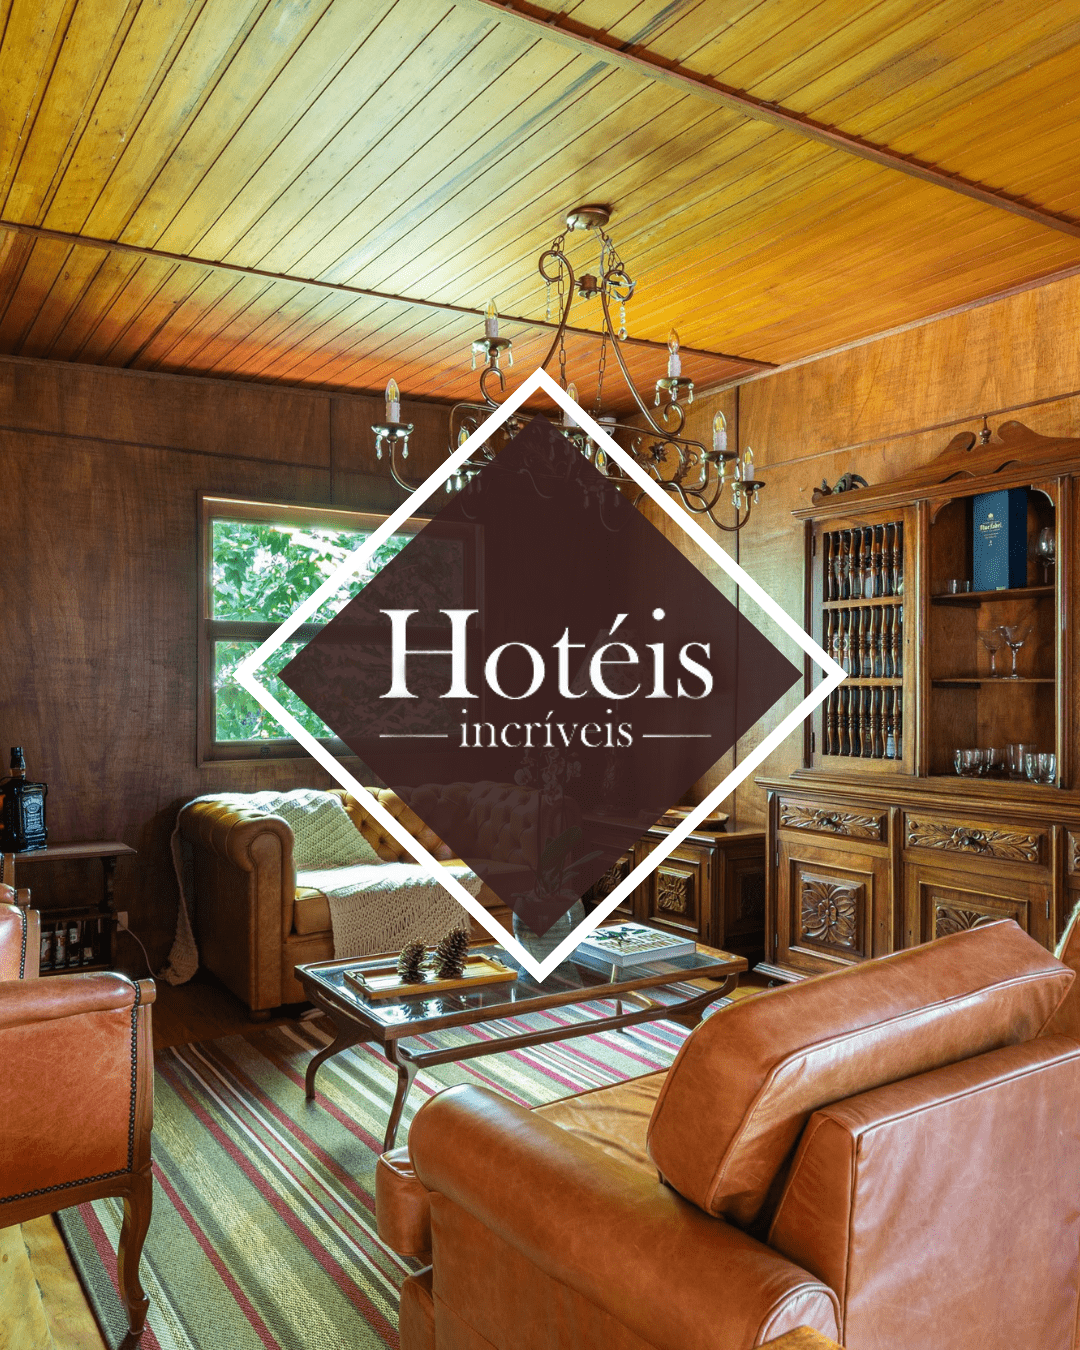 Hotel Quebra-Noz faz parte dos Hotéis Incríveis da Globoplay 2